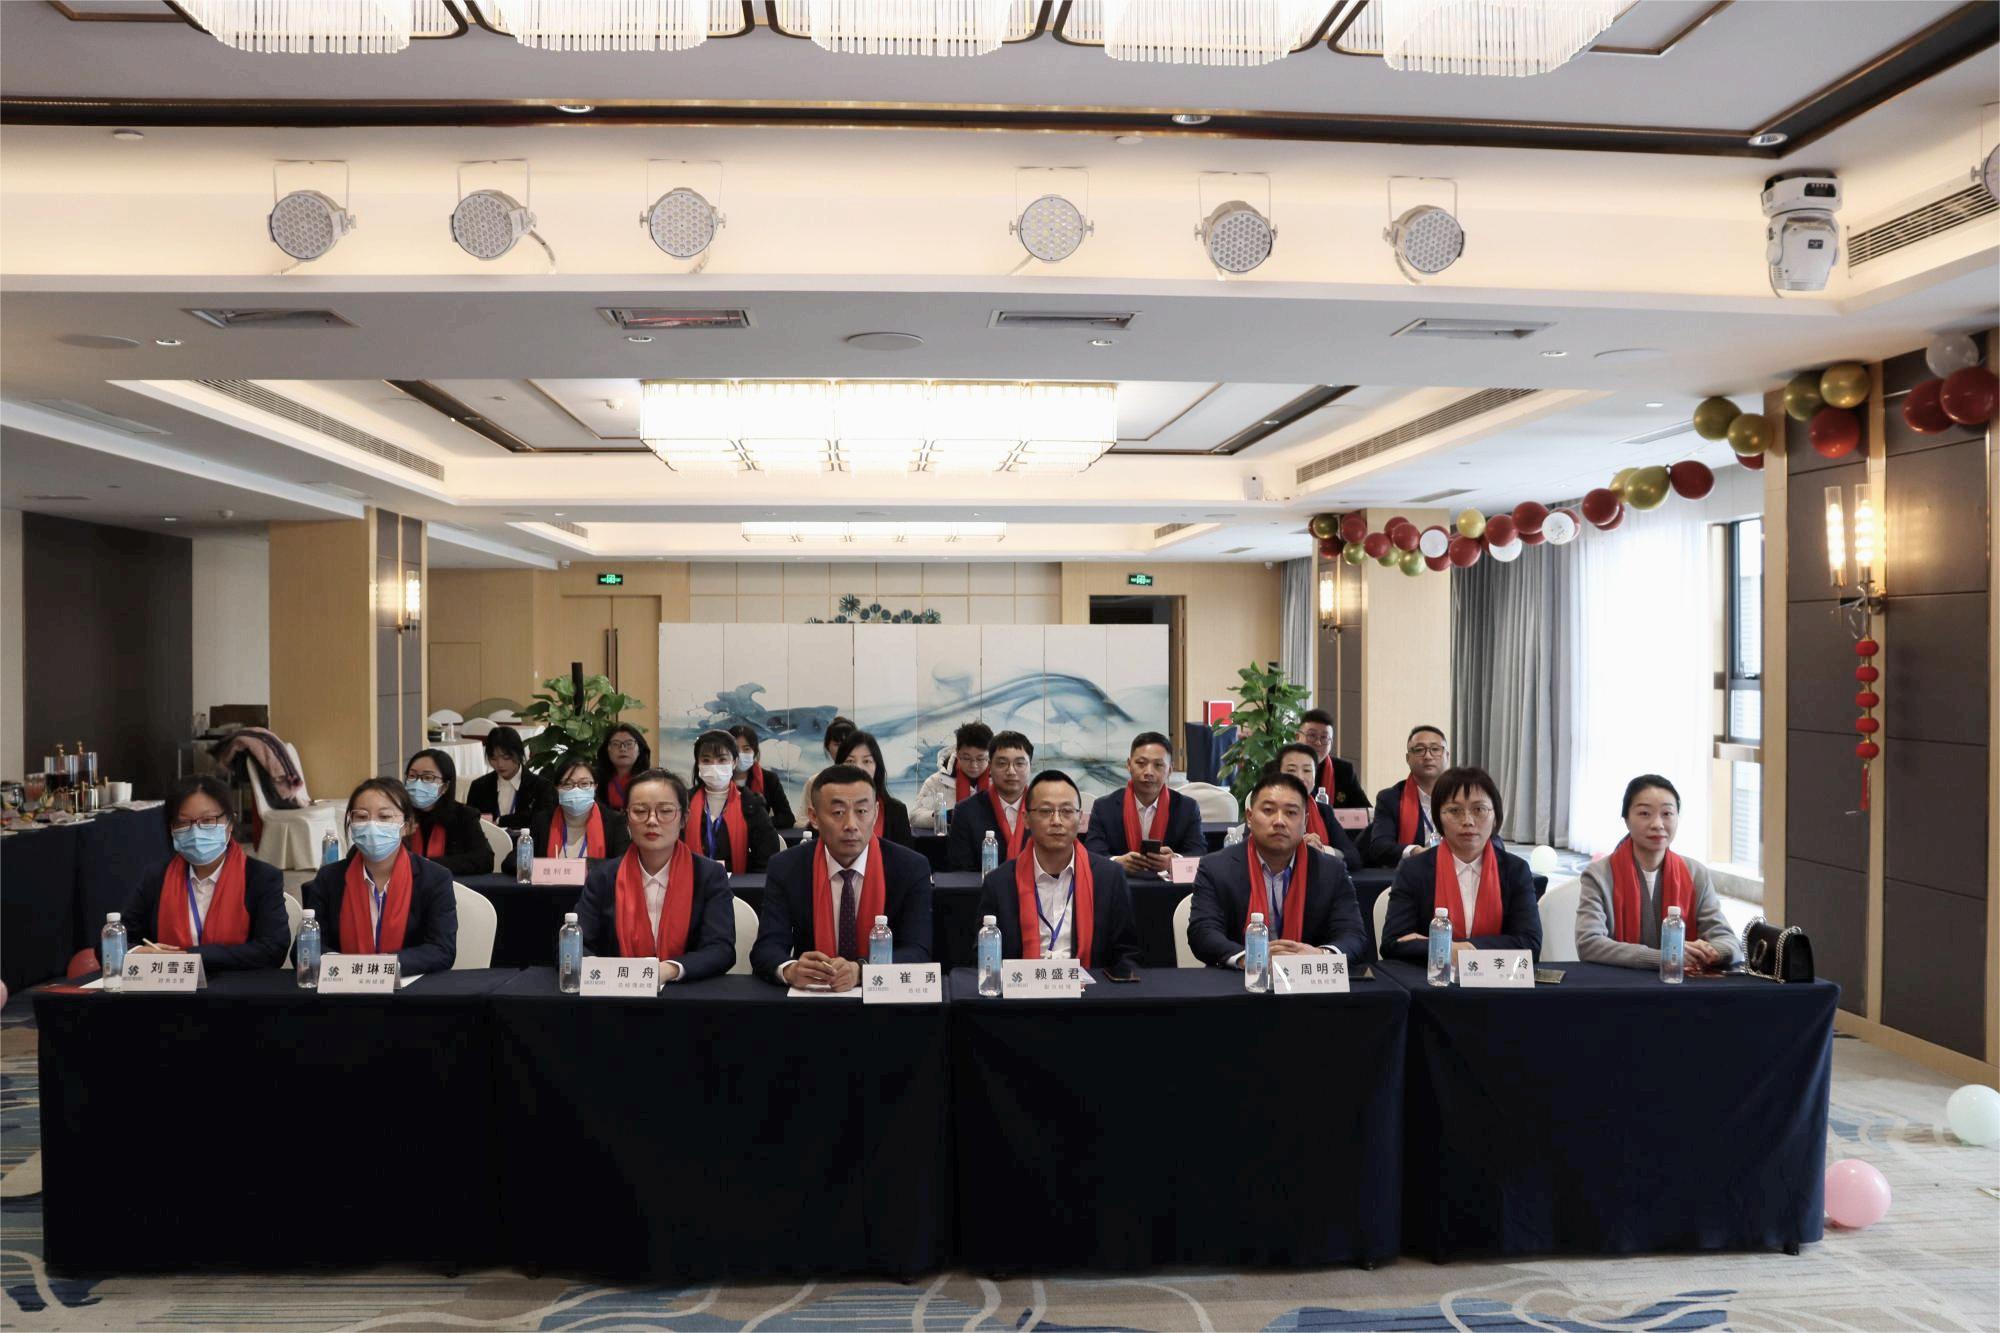 Sichuan Shengshi Hengyang hold in grutte jierlikse gearkomste op 16 jannewaris 2023